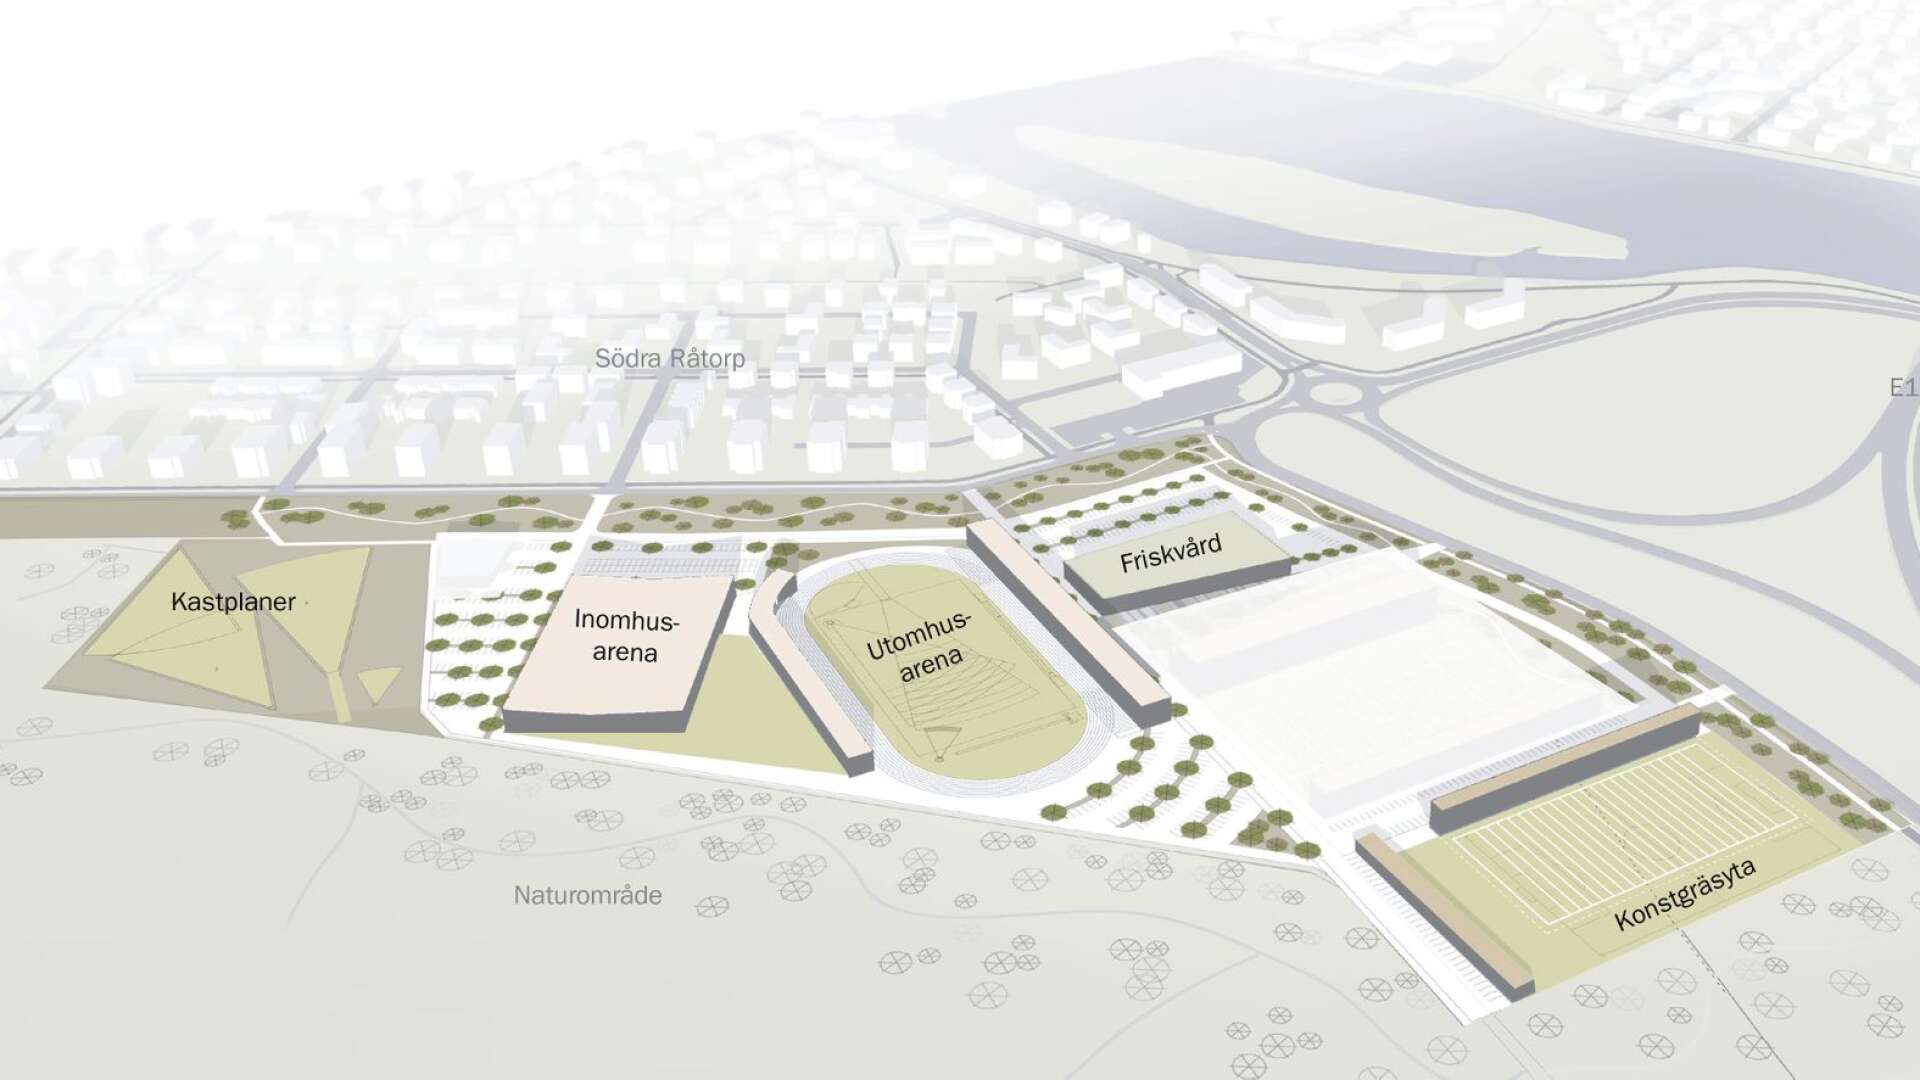 Så här är det tänkt att Sannafältets sportcenter ska se ut. I en första etapp finns en inomhusarena, en utomhusarena och en konstgräsplan med på kartan. Två av dem med byggstart 2020. En fotbollsarena och en fastighet har tills vidare lyfts ur planeringen, det är de vita områdena.